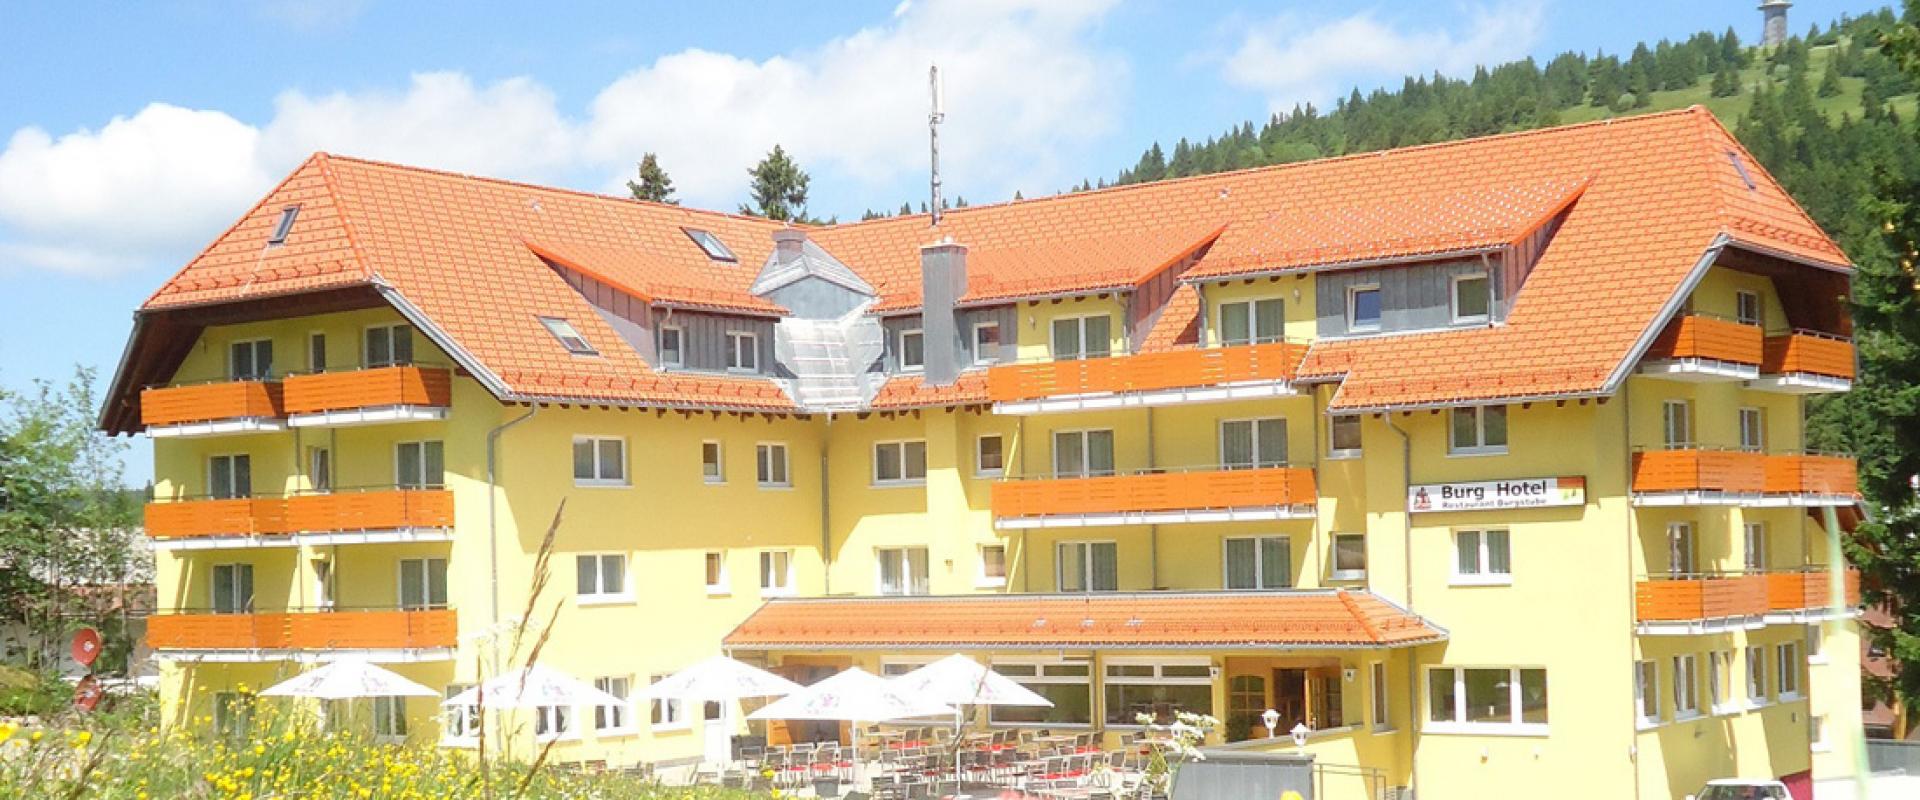 20710 Motorrad Hotel Burg im Schwarzwald.jpg